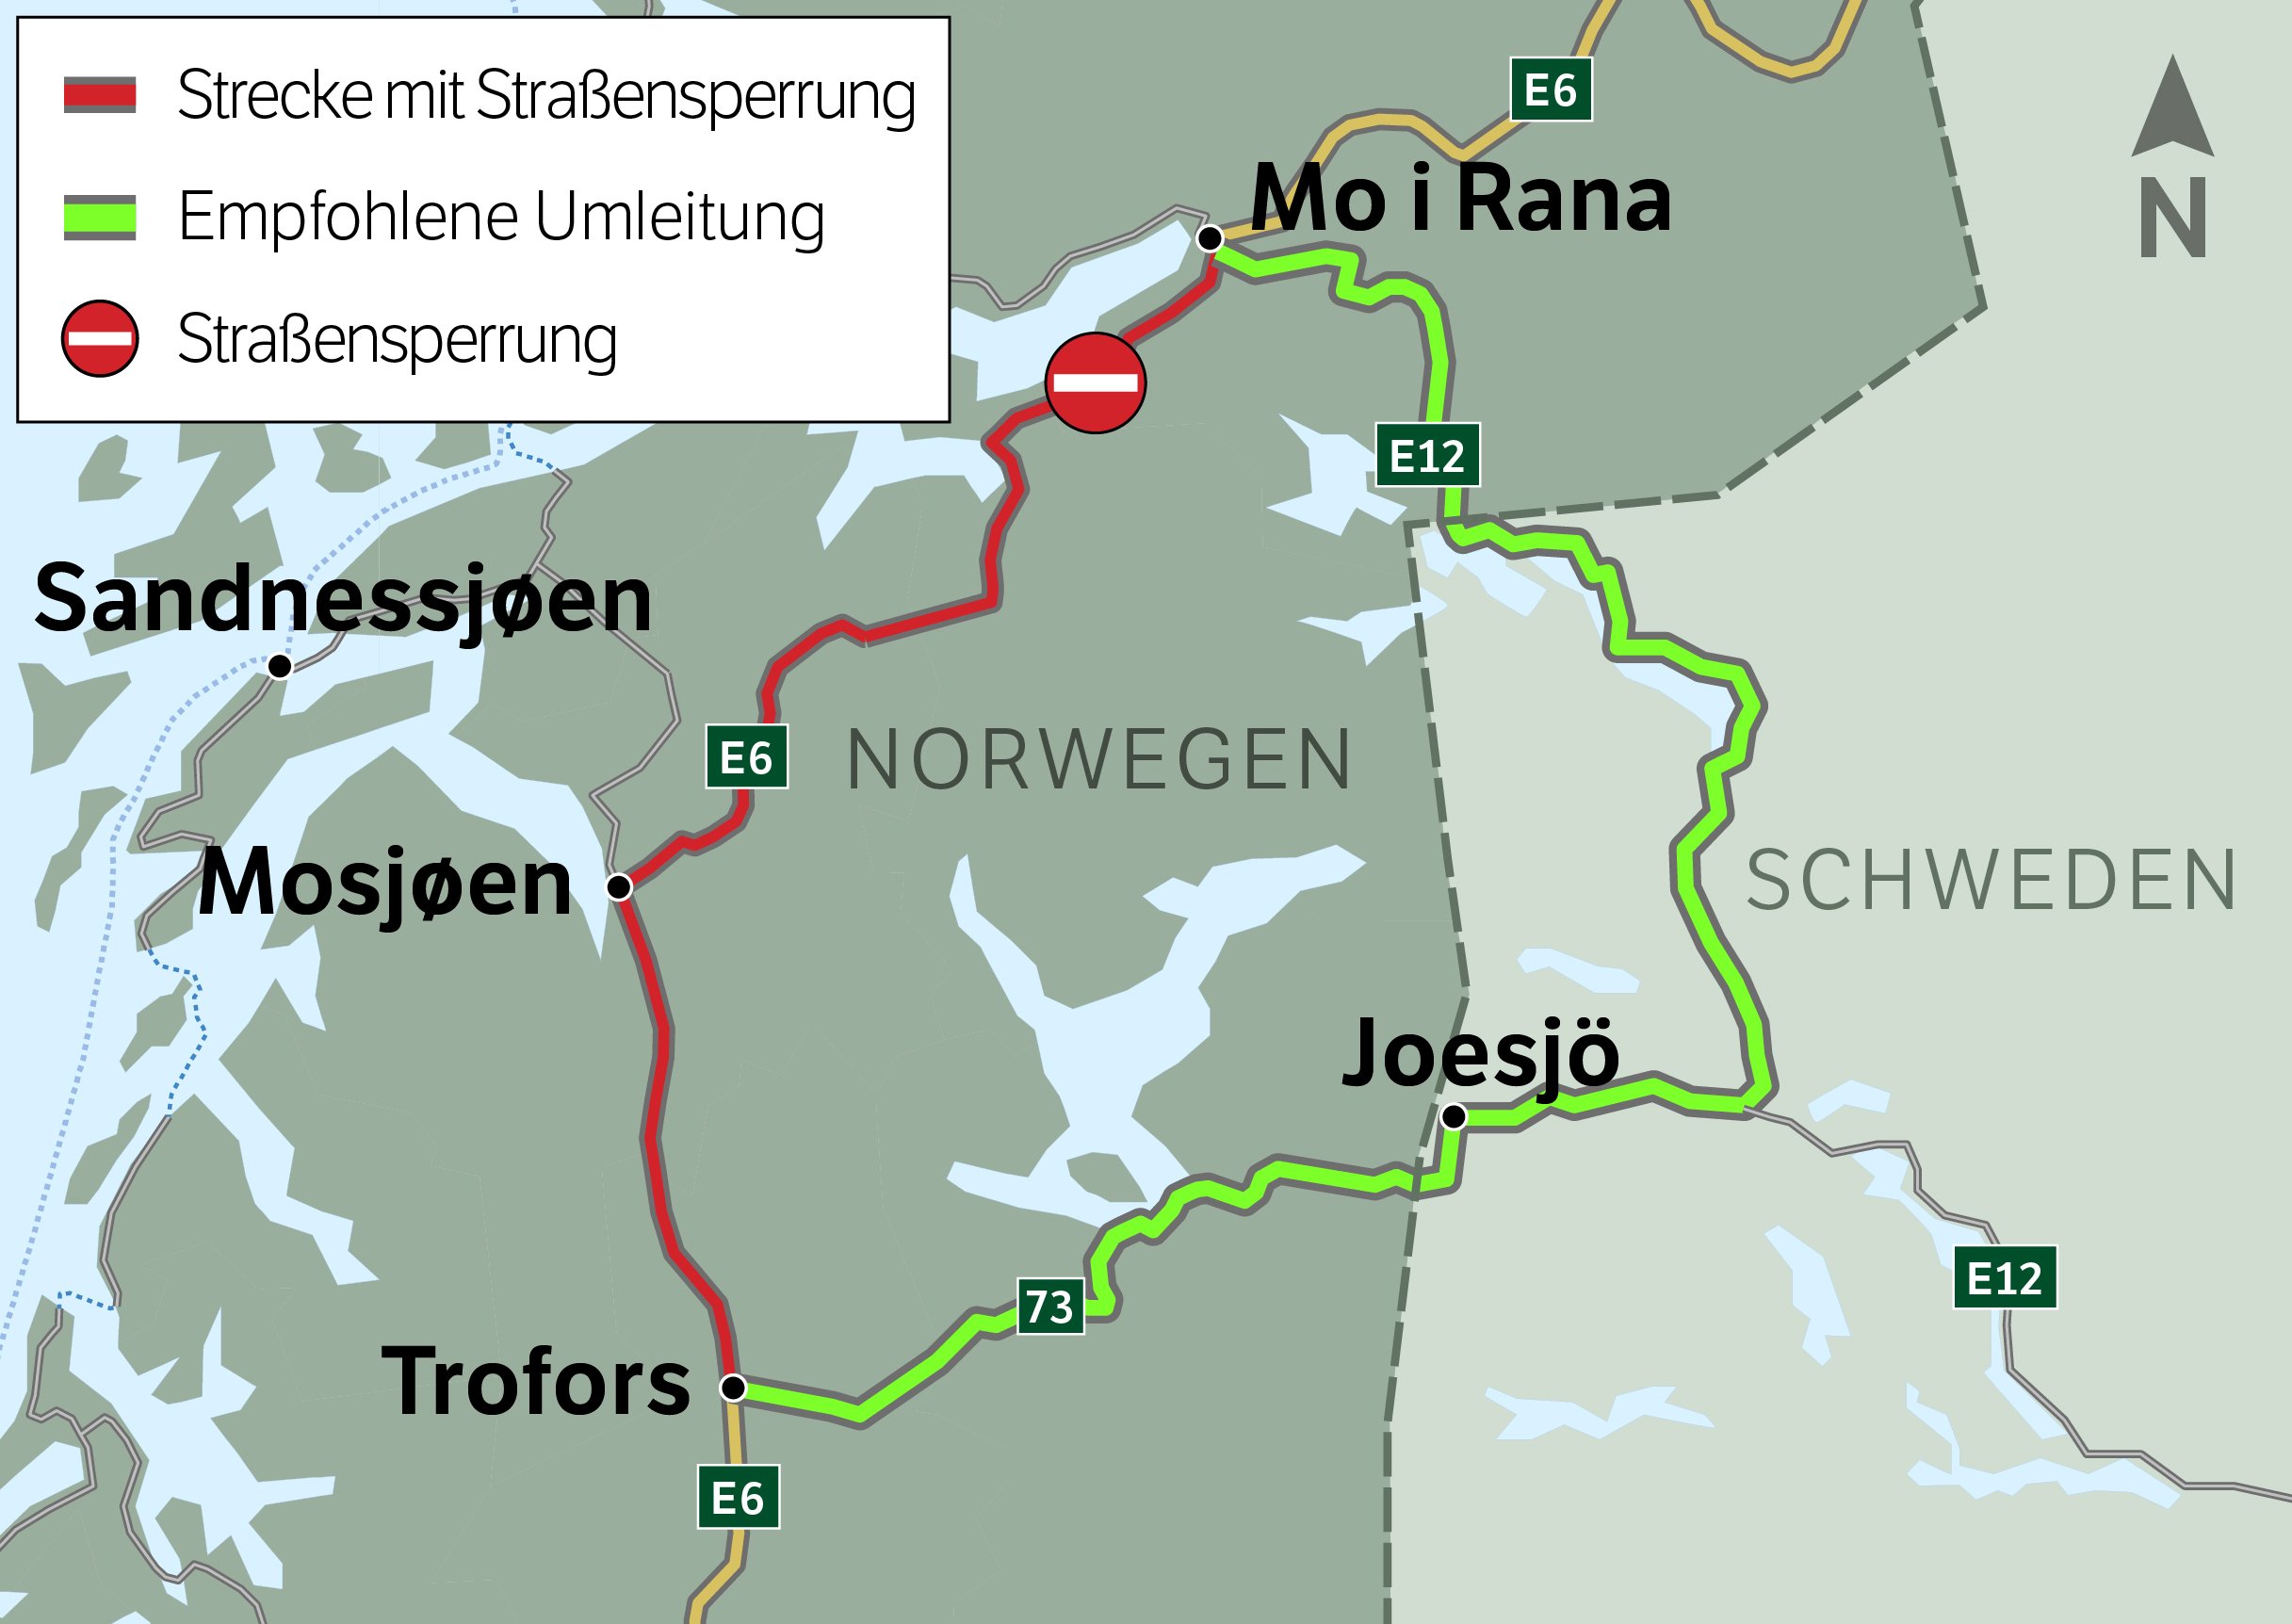 Empfohlene Umleitung ist E12 / Rv 73 zwischen Mo i Rana und Trofors durch Schweden.